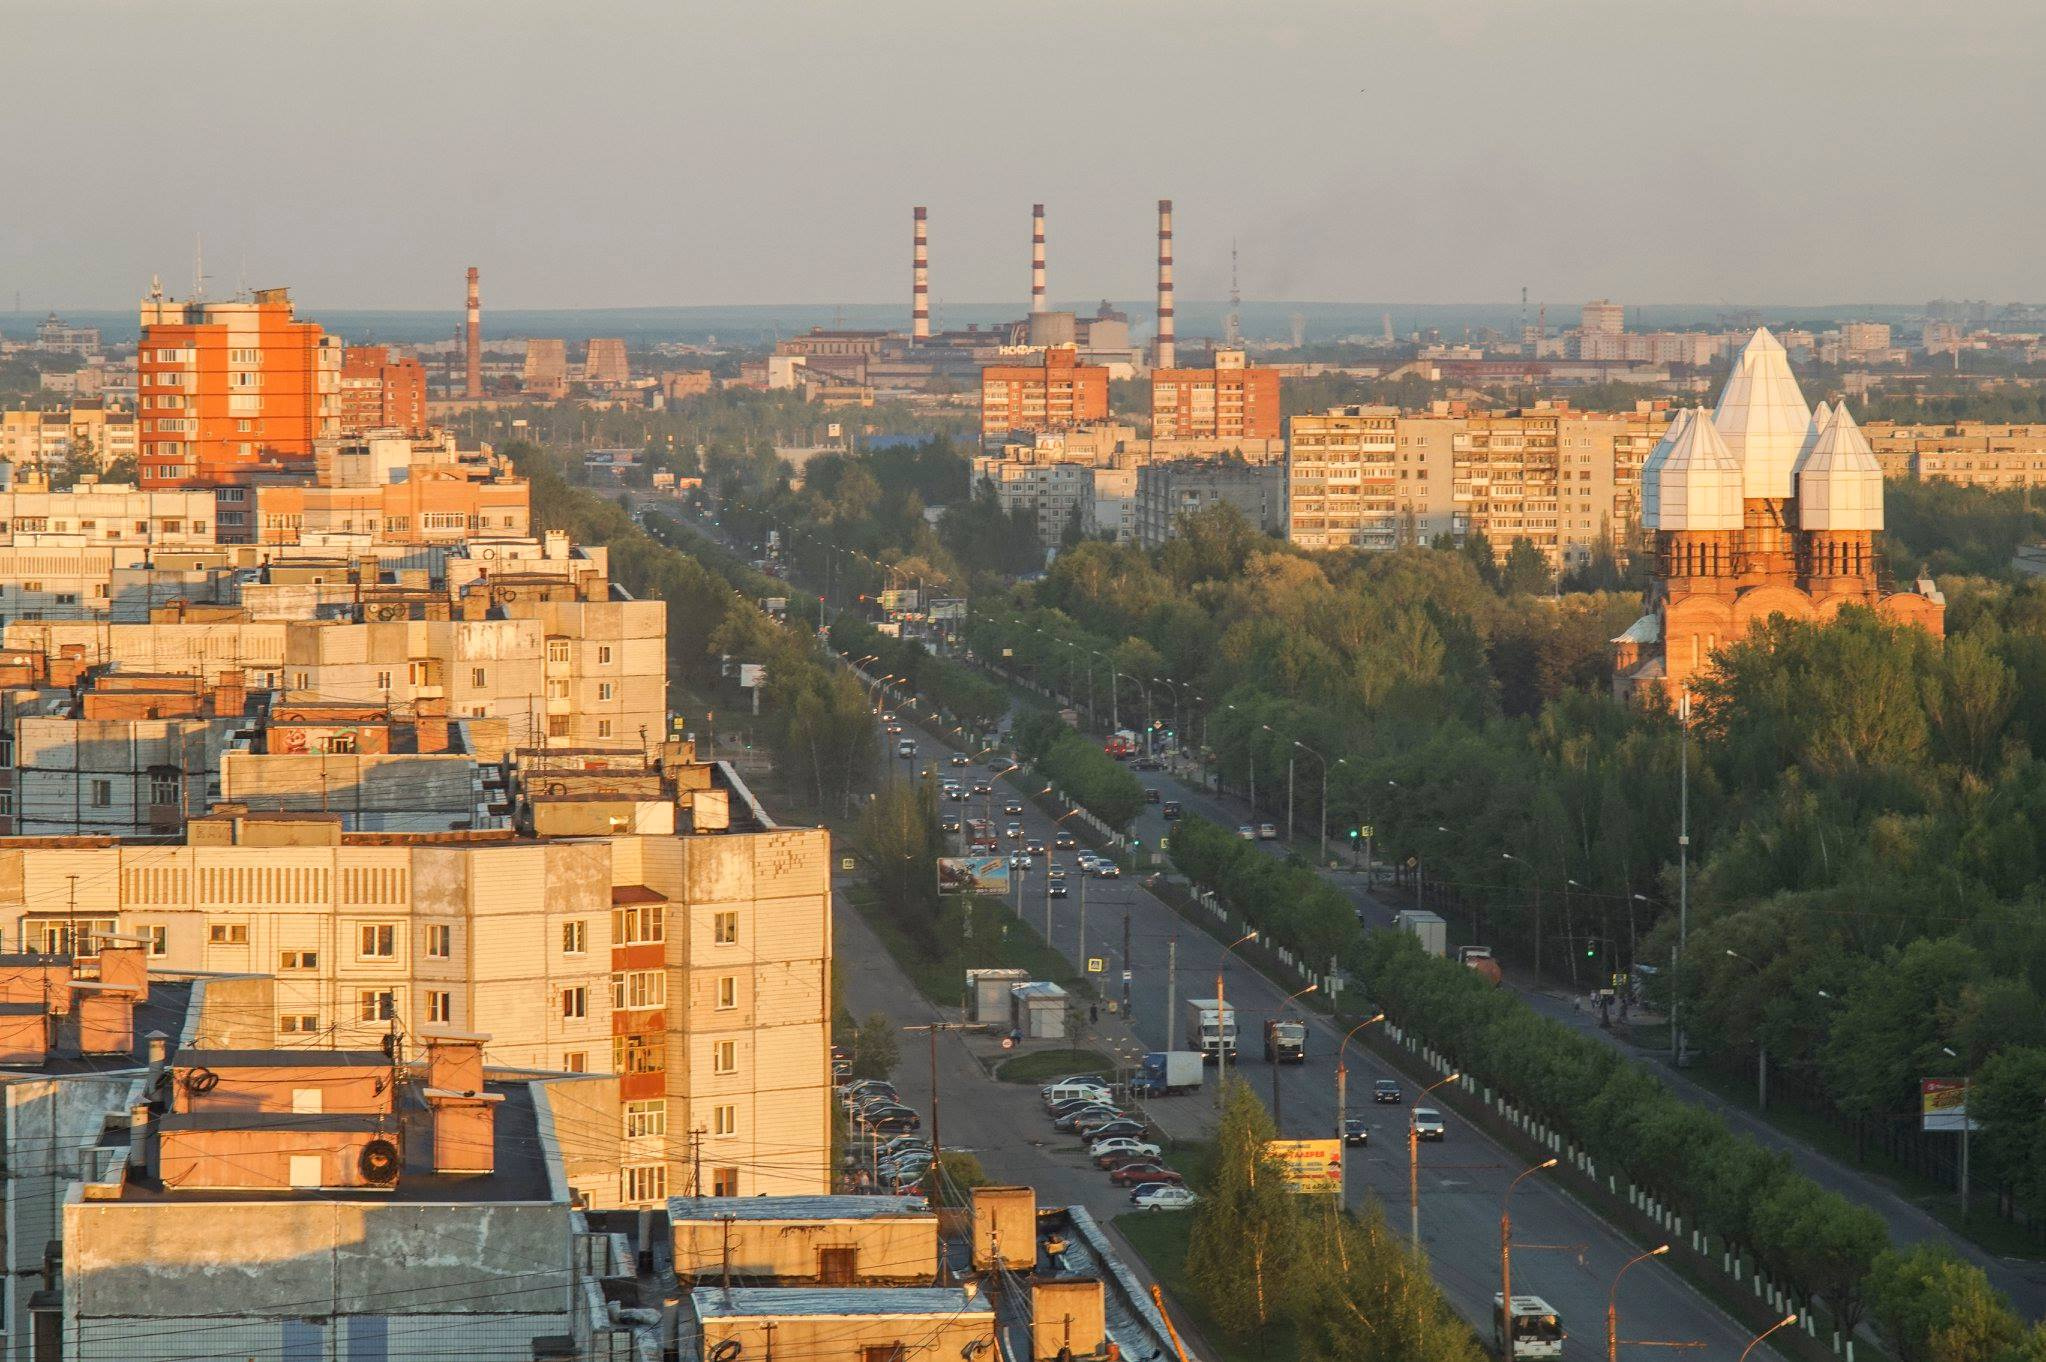 Взгляд на центральный проспект — Ленинградский